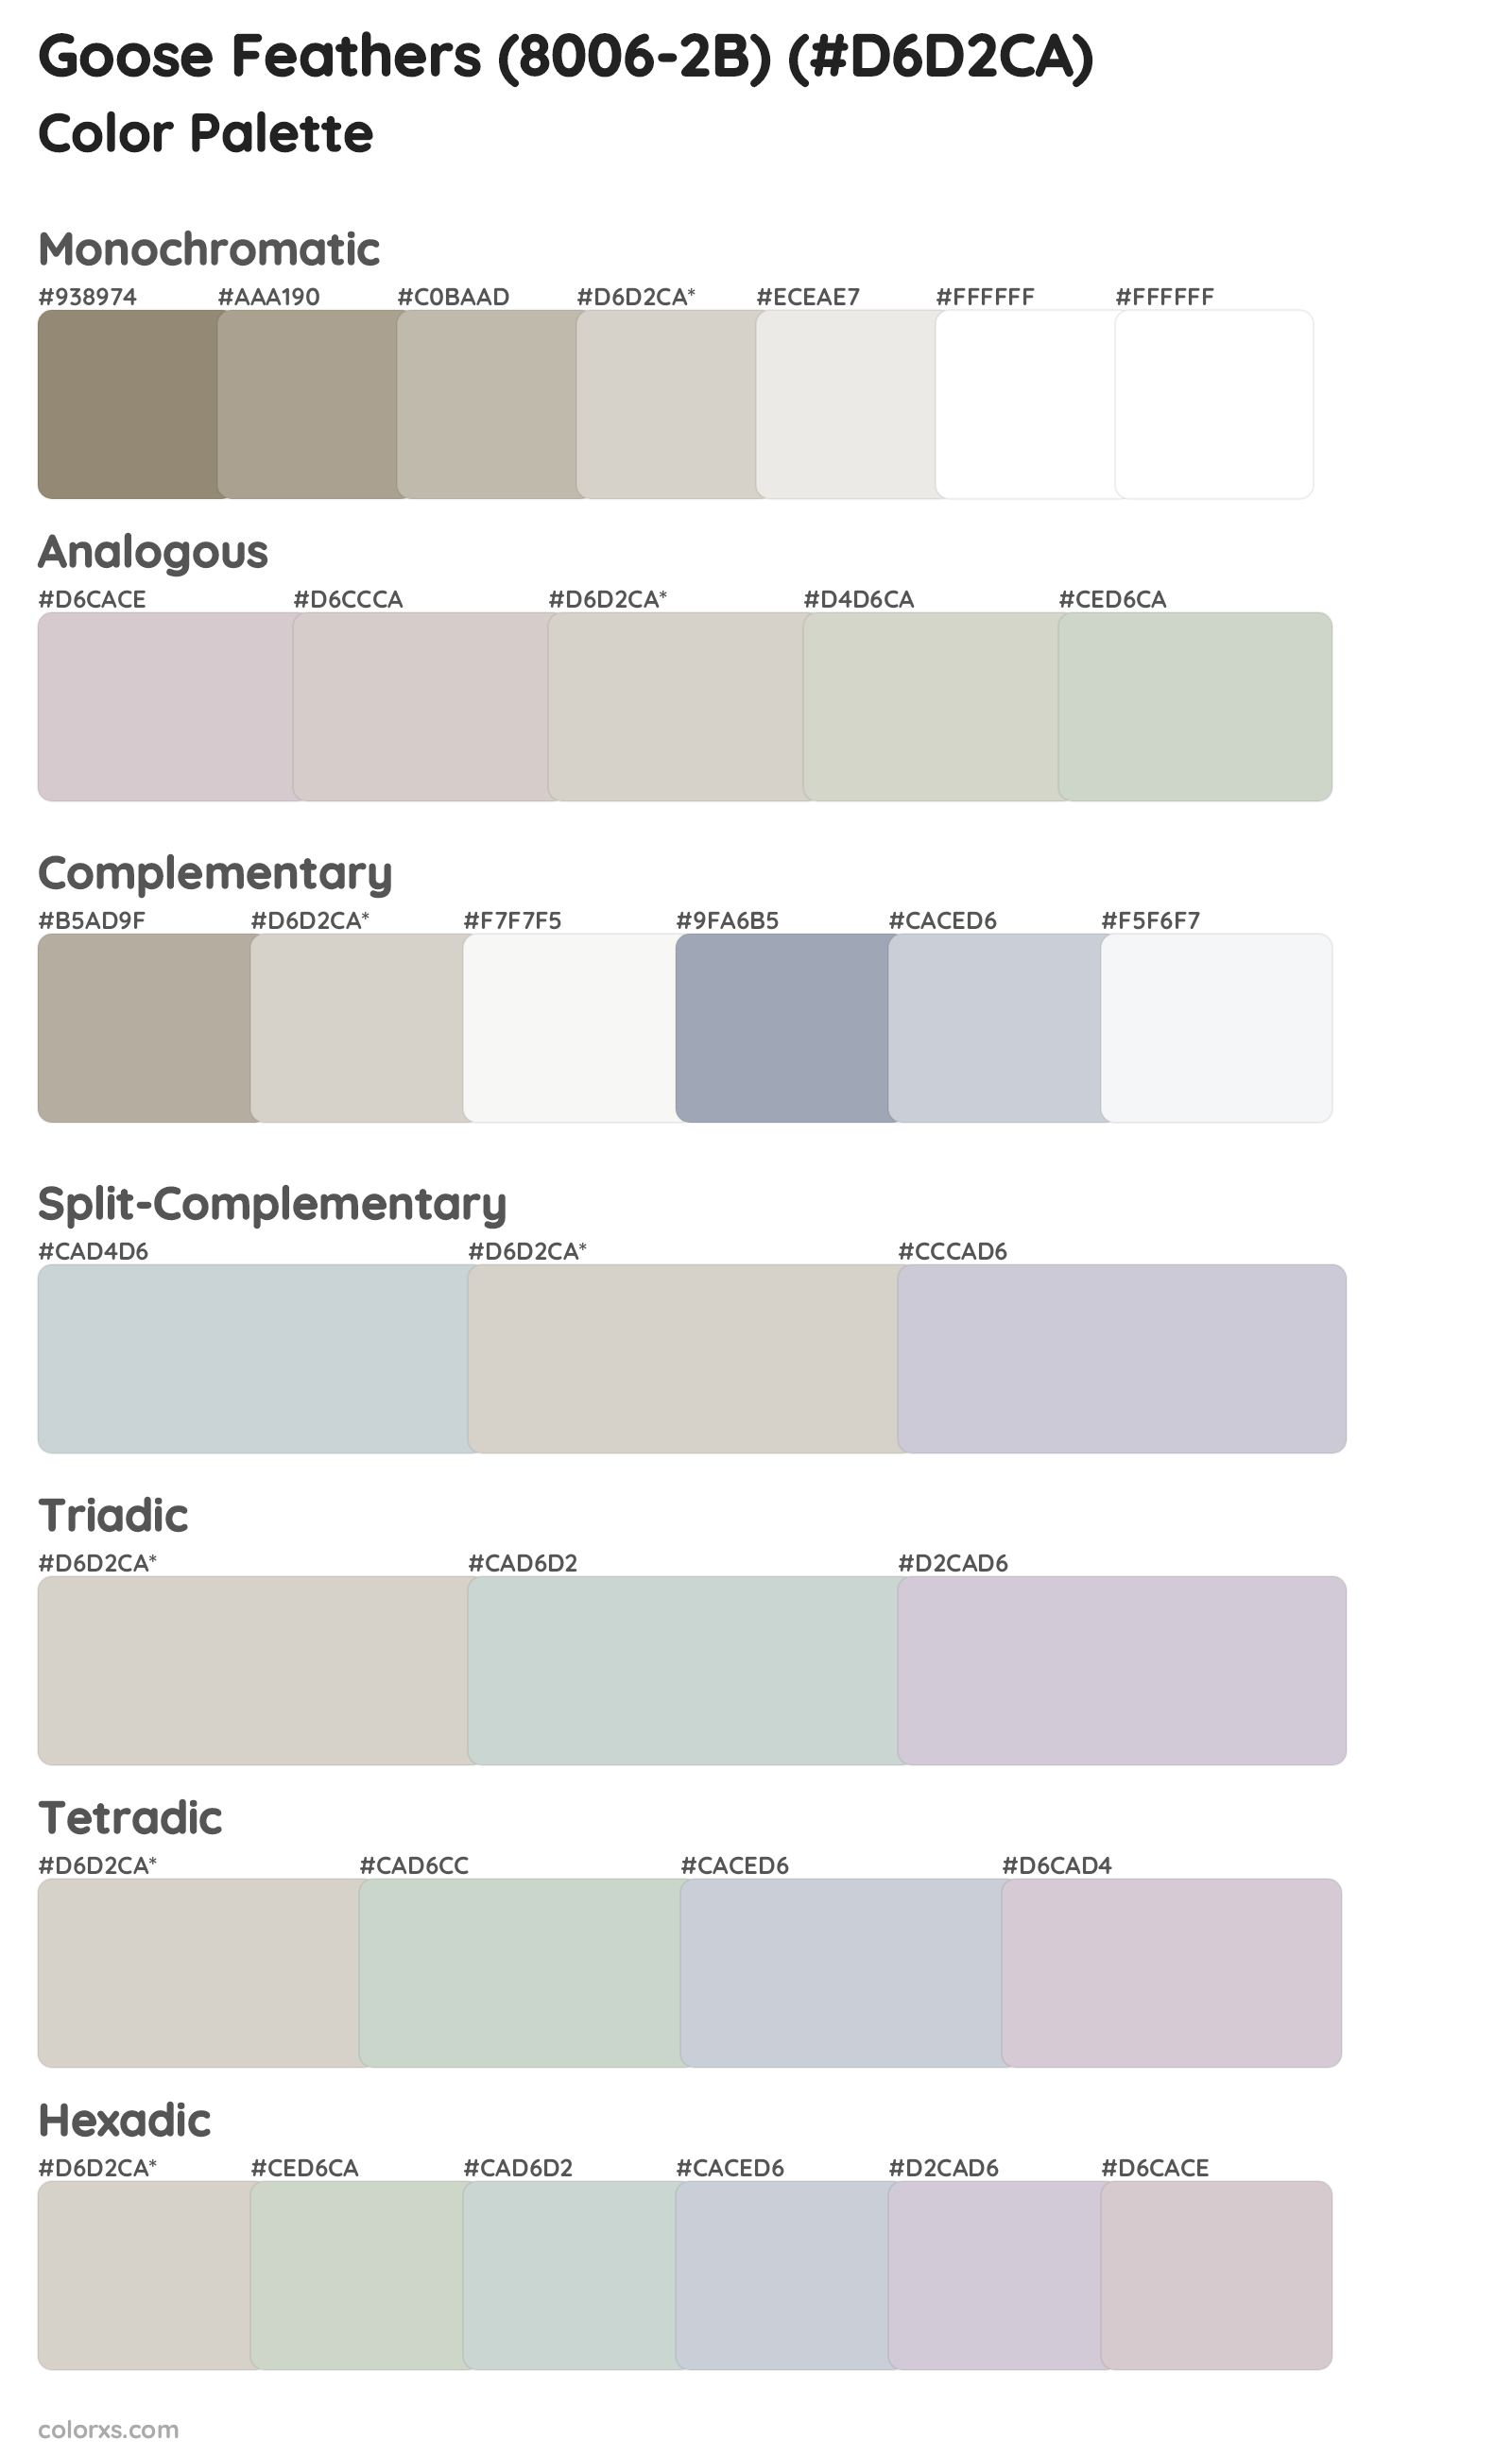 Goose Feathers (8006-2B) Color Scheme Palettes